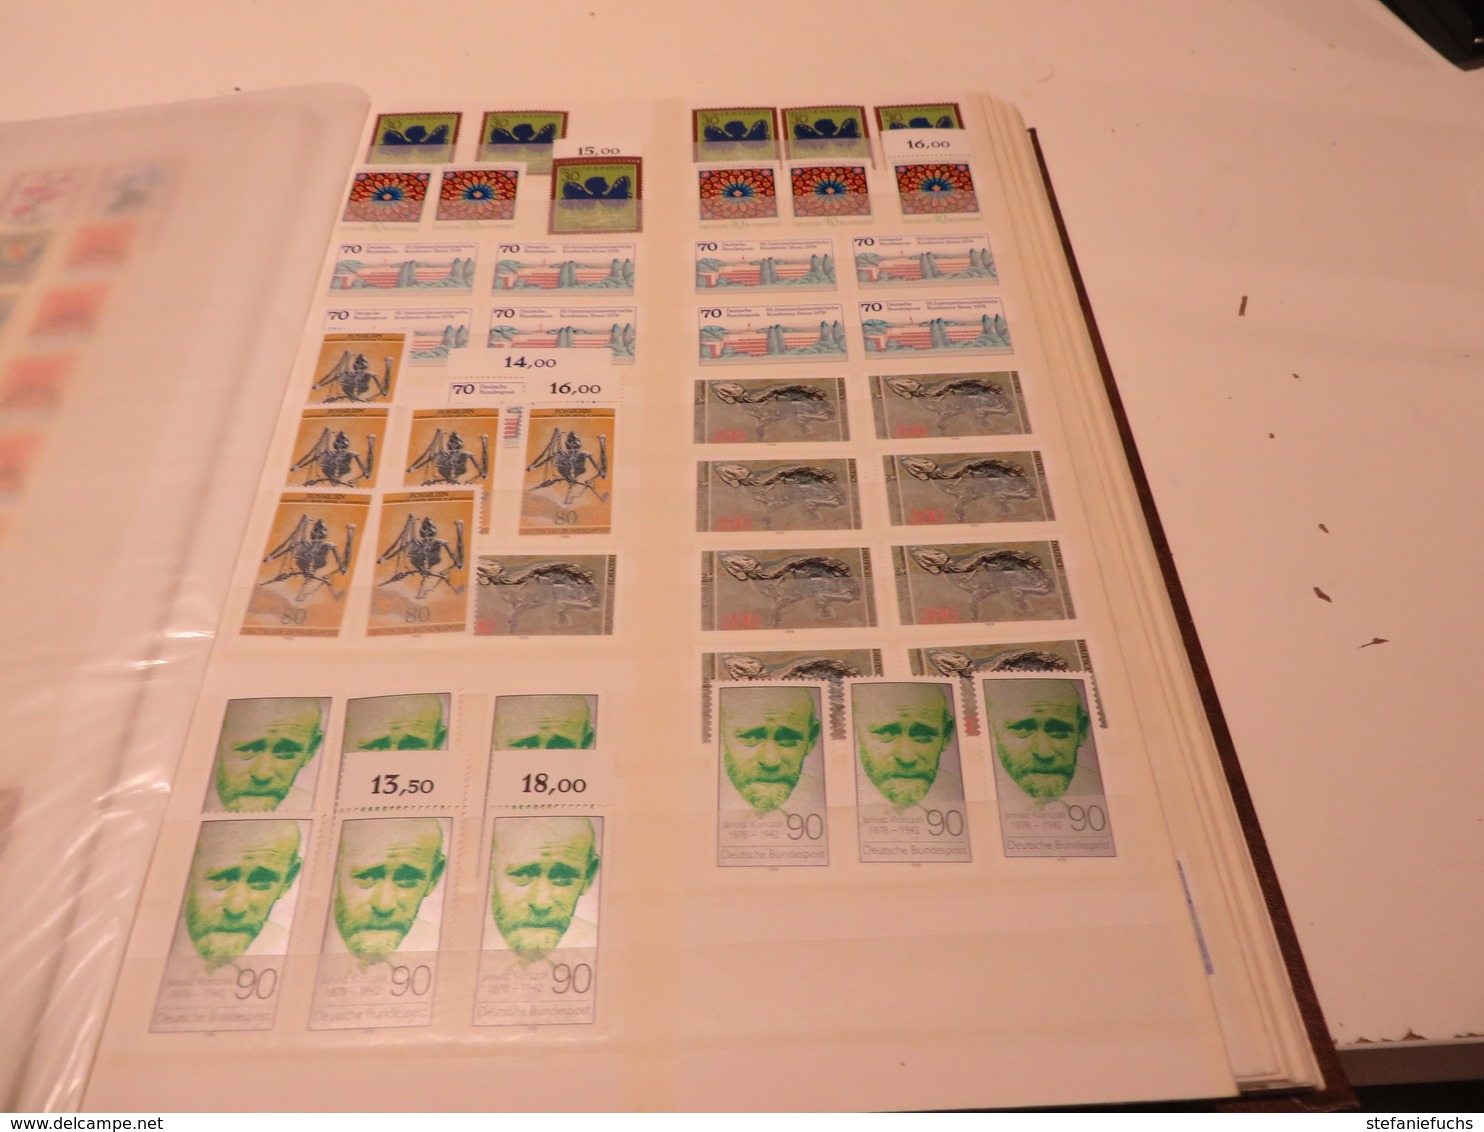 DEUTSCHLAND  1970 bis 1980  Posten  ** /  MARKEN  im  gebrauchten,  dicken  STECKBUCH